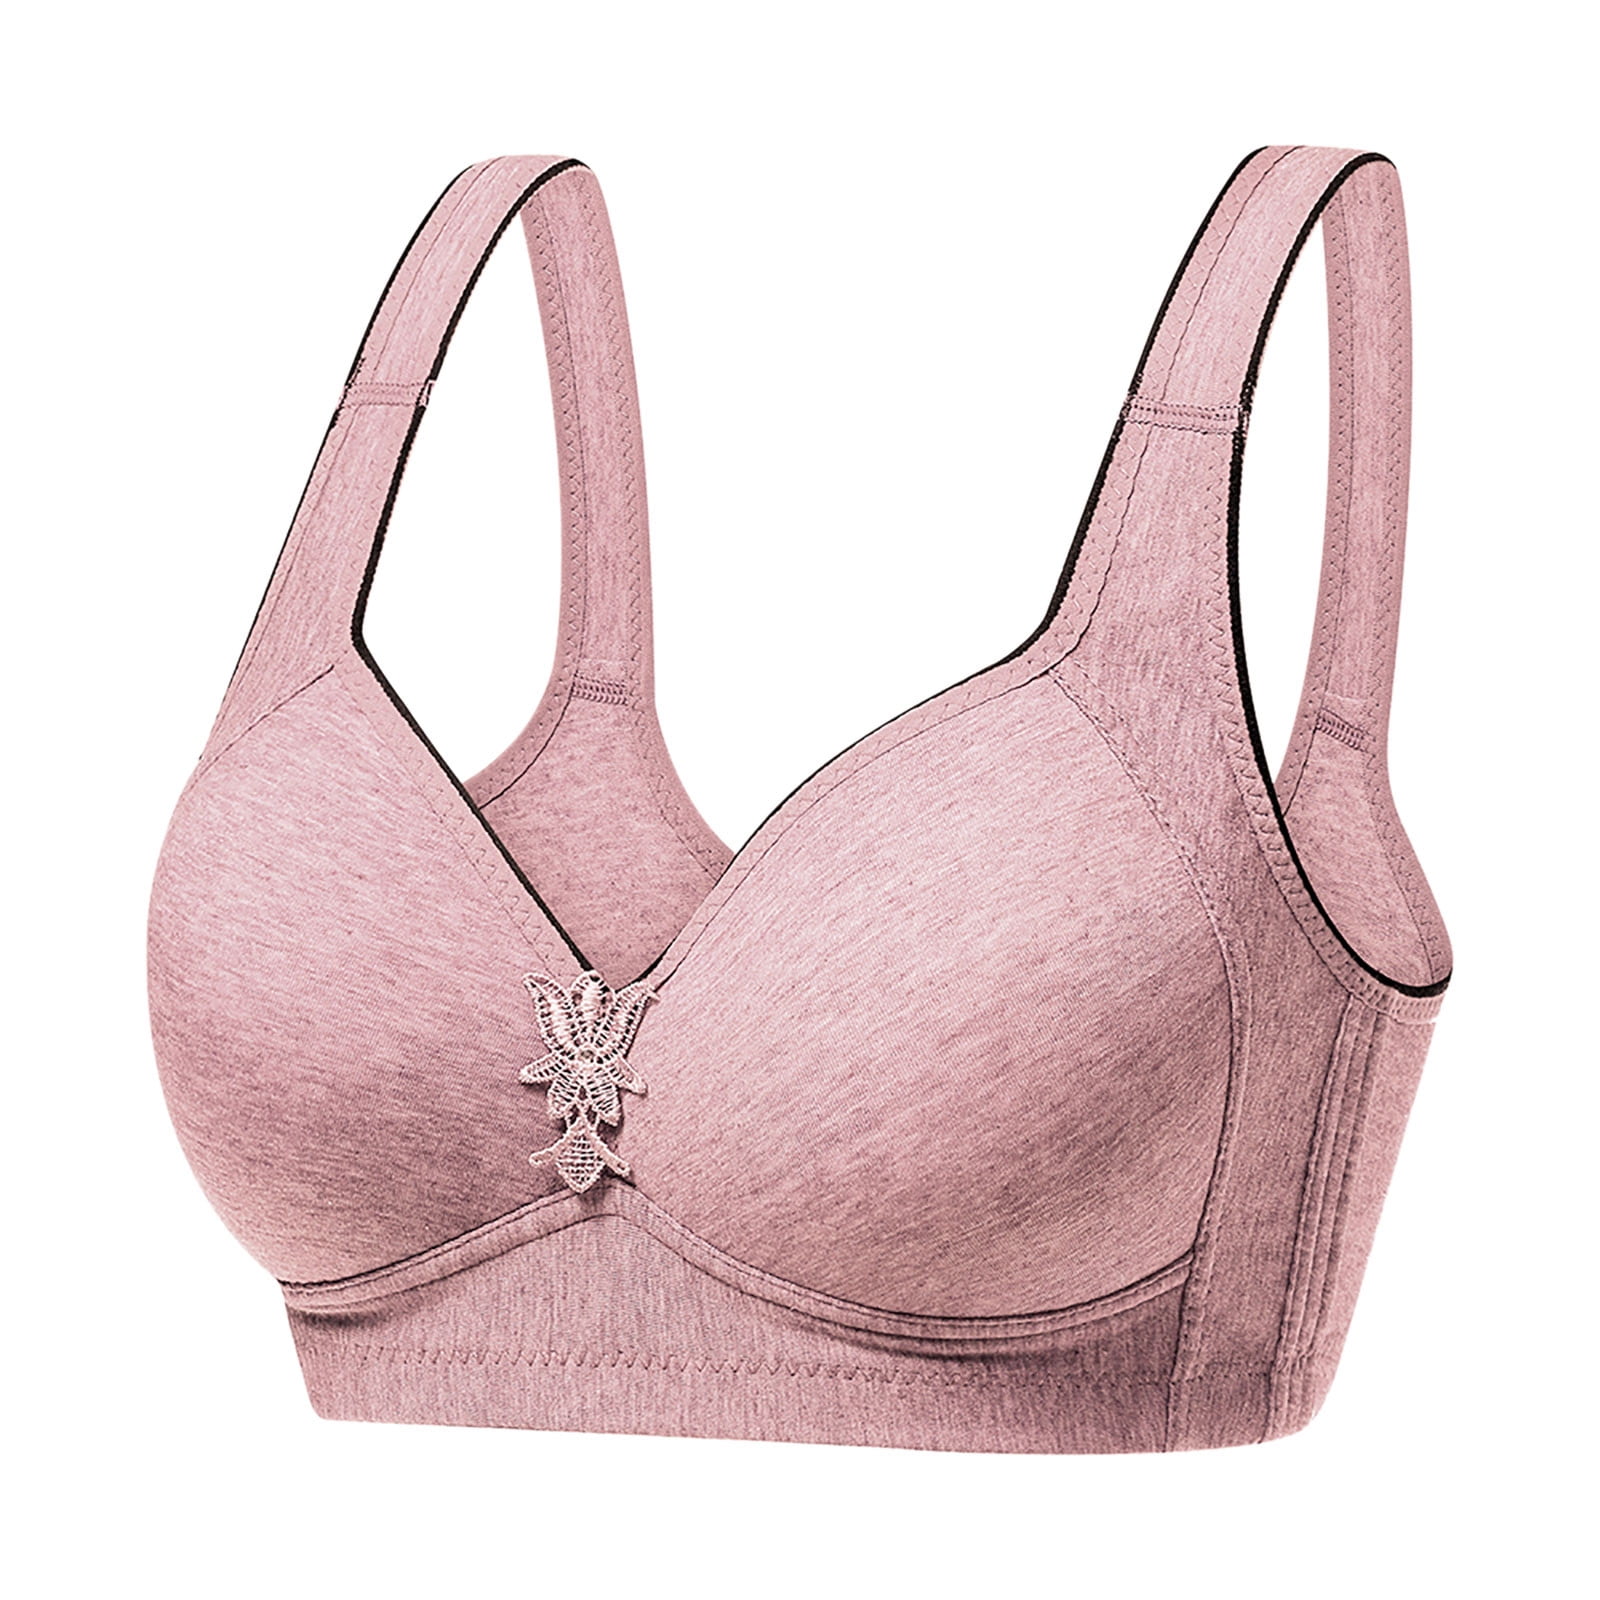 Scyoekwg Bras for Women No Underwire Glossy Comfortable Breathable Bra  Everyday Underwear Bras T-Shirt Bra Pink M